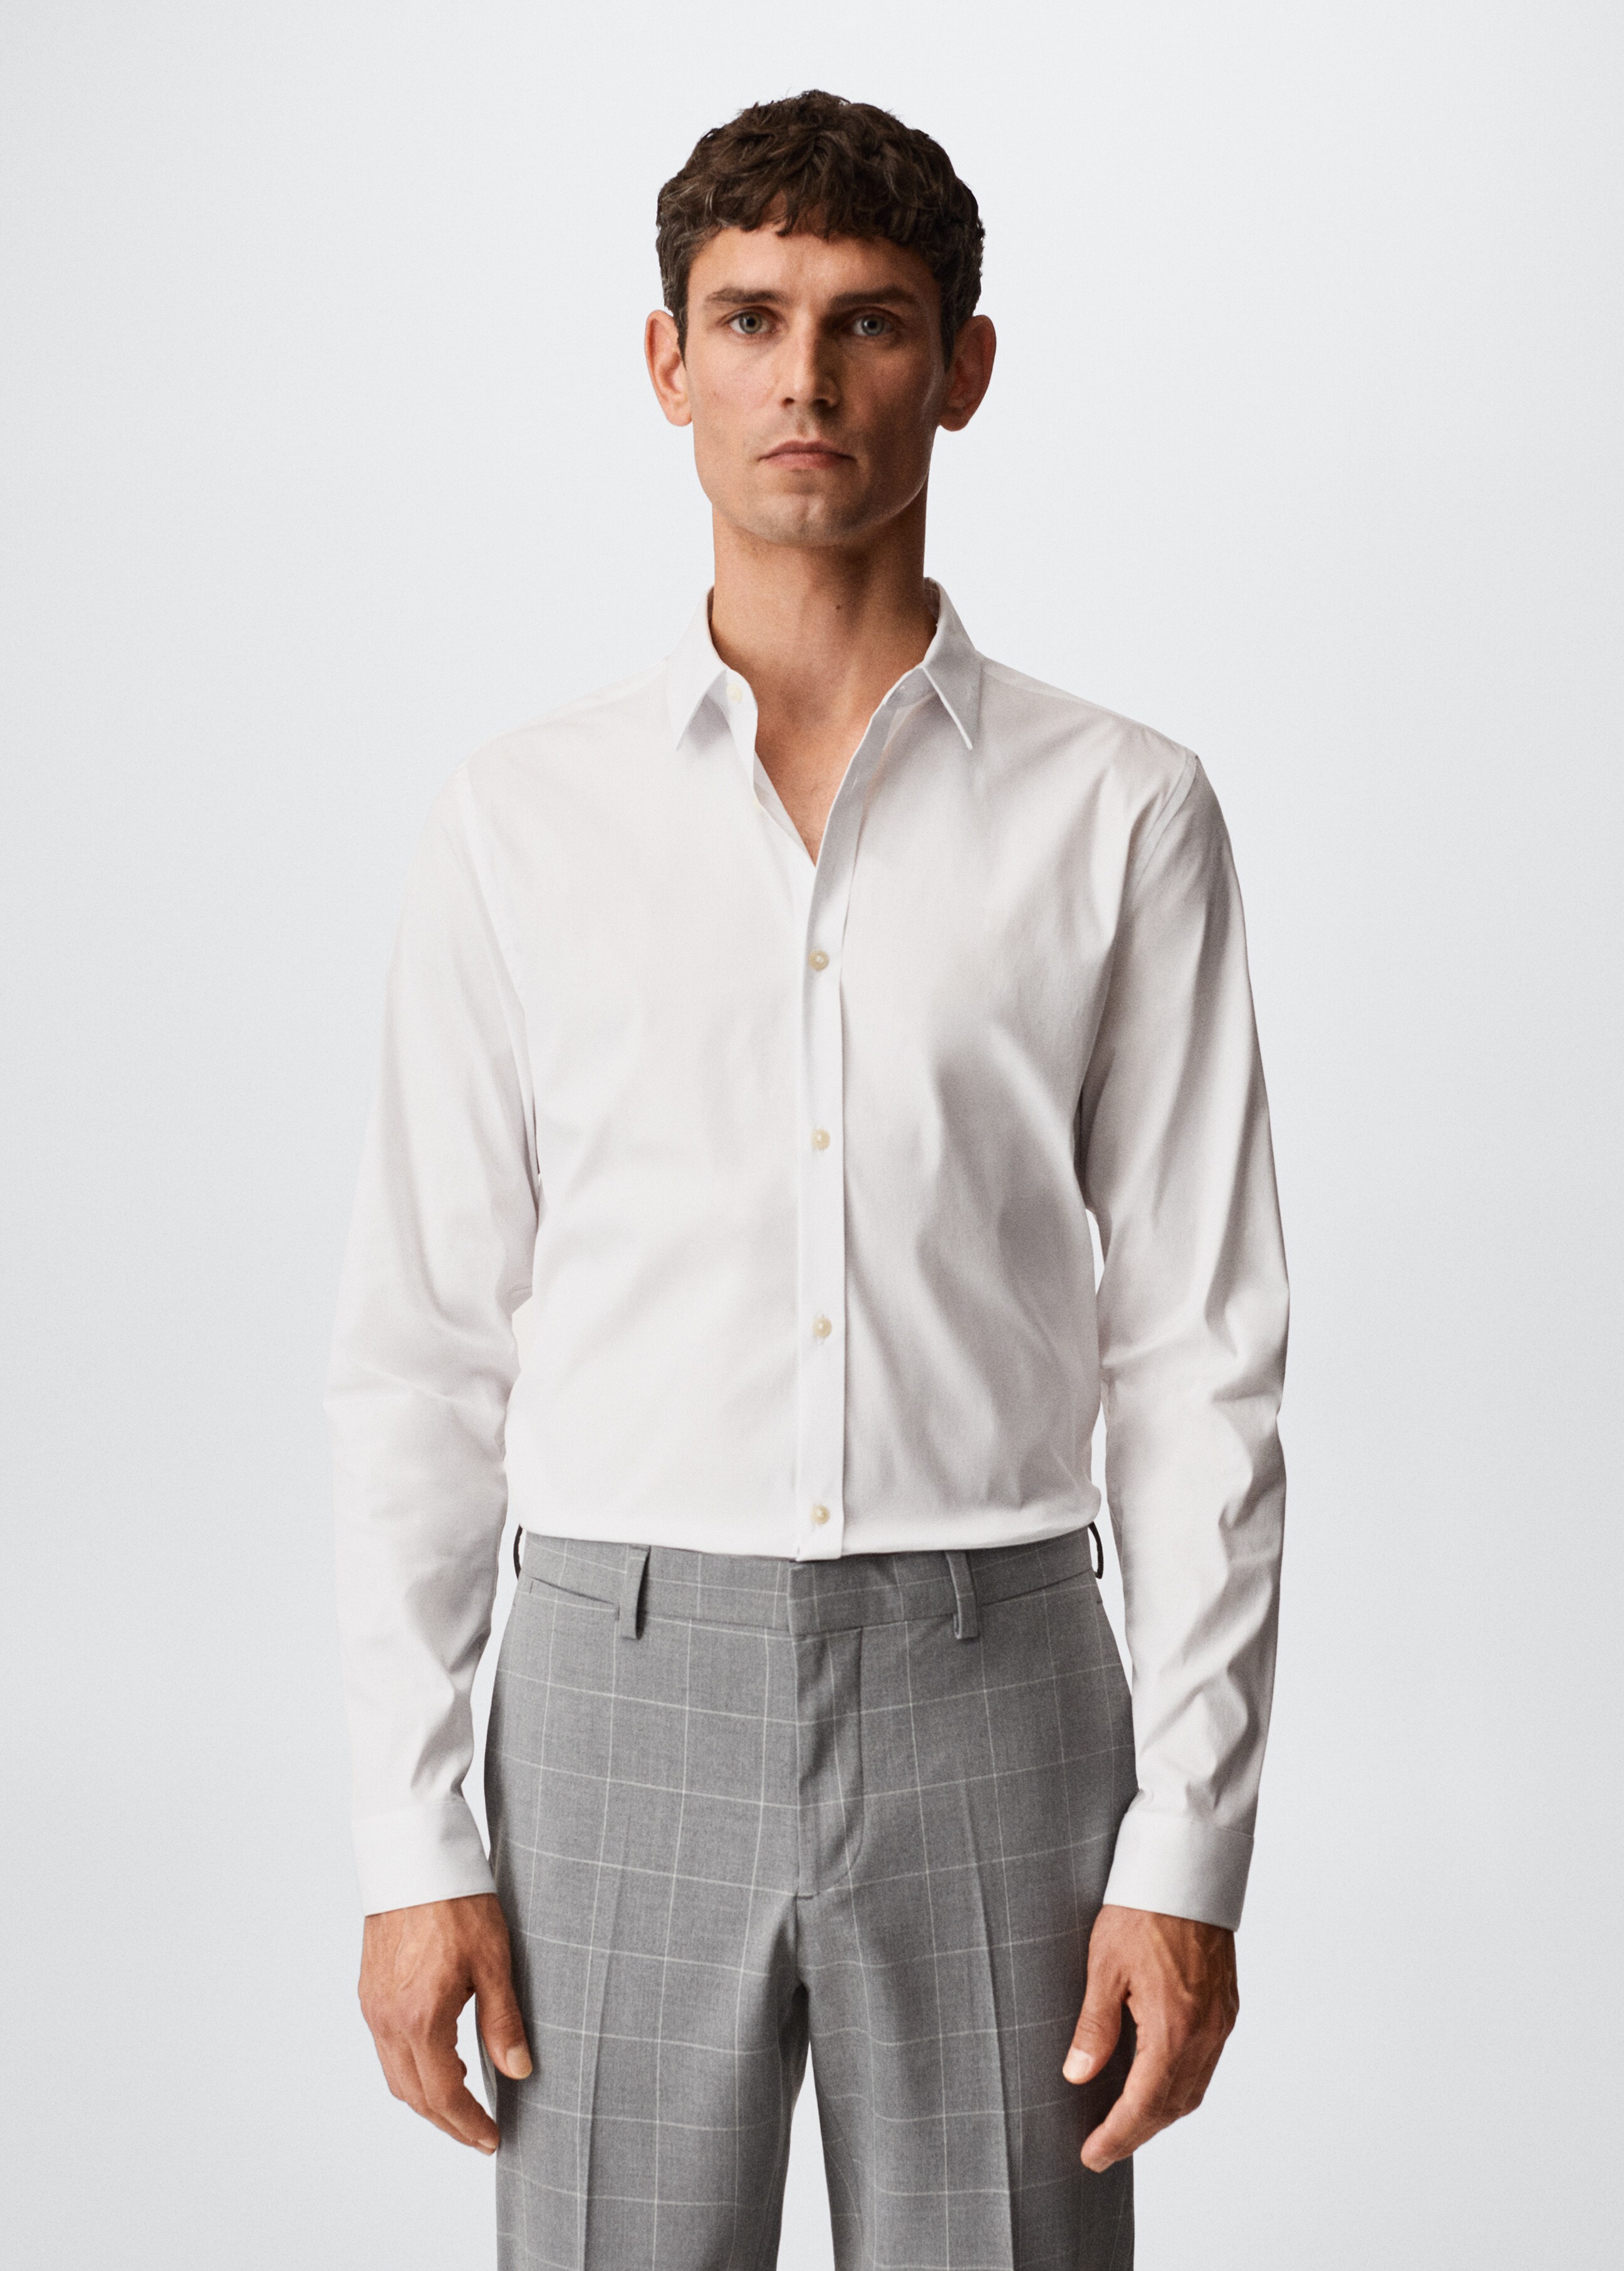 Super slim fit cotton stretch suit shirt - Medium plane